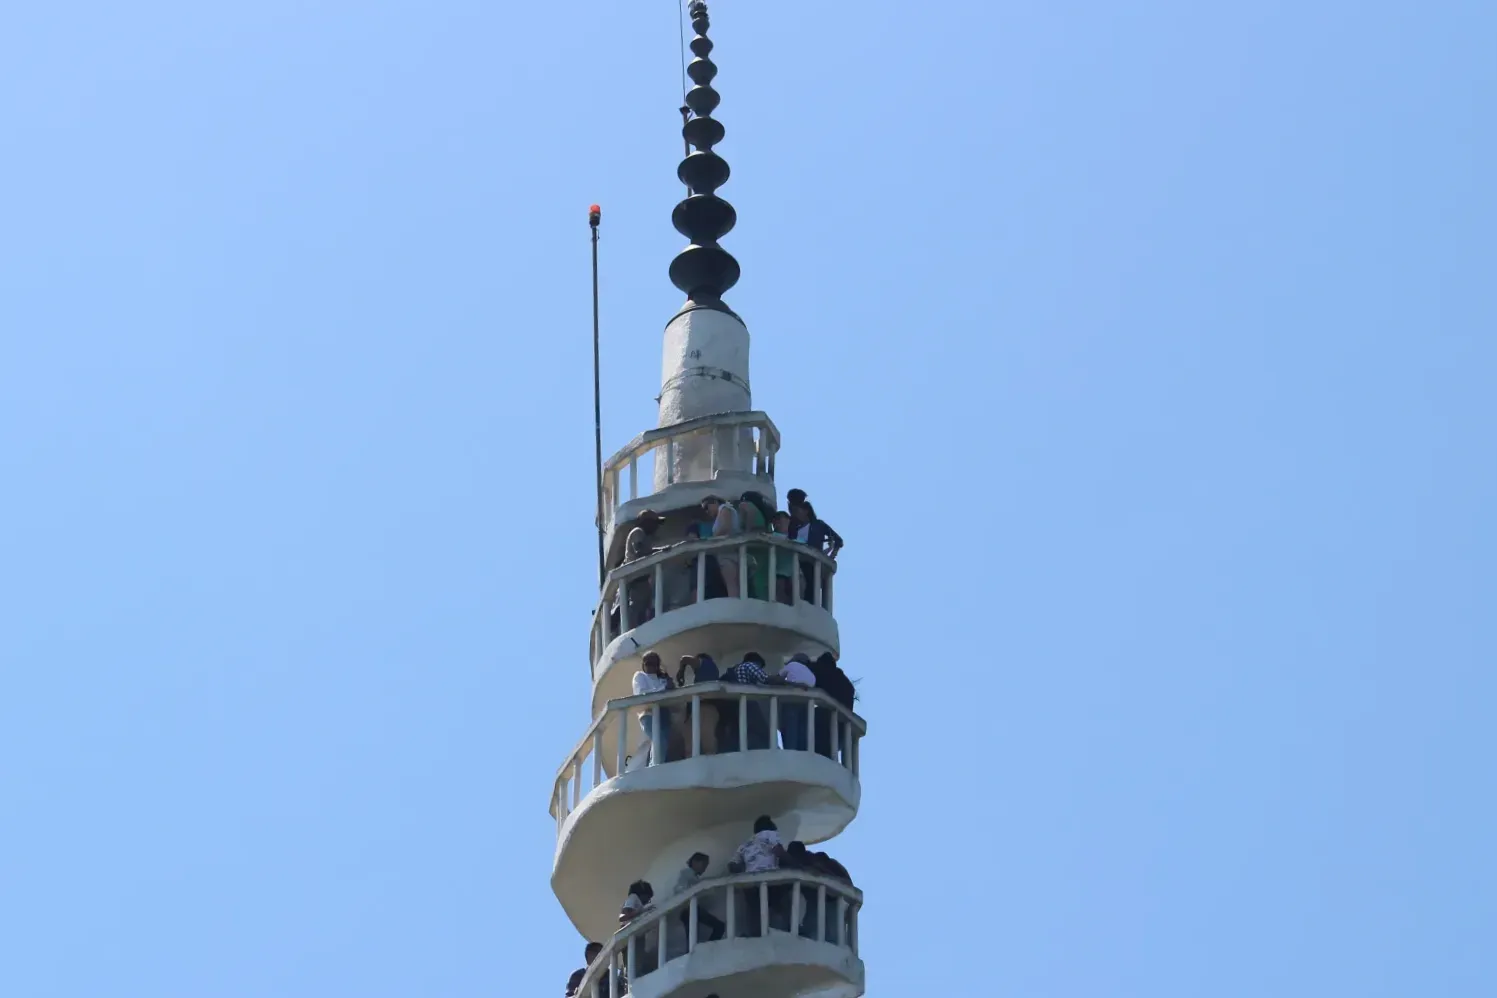 Visitors climbing the Ambuluwawa Tower in Sri Lanka